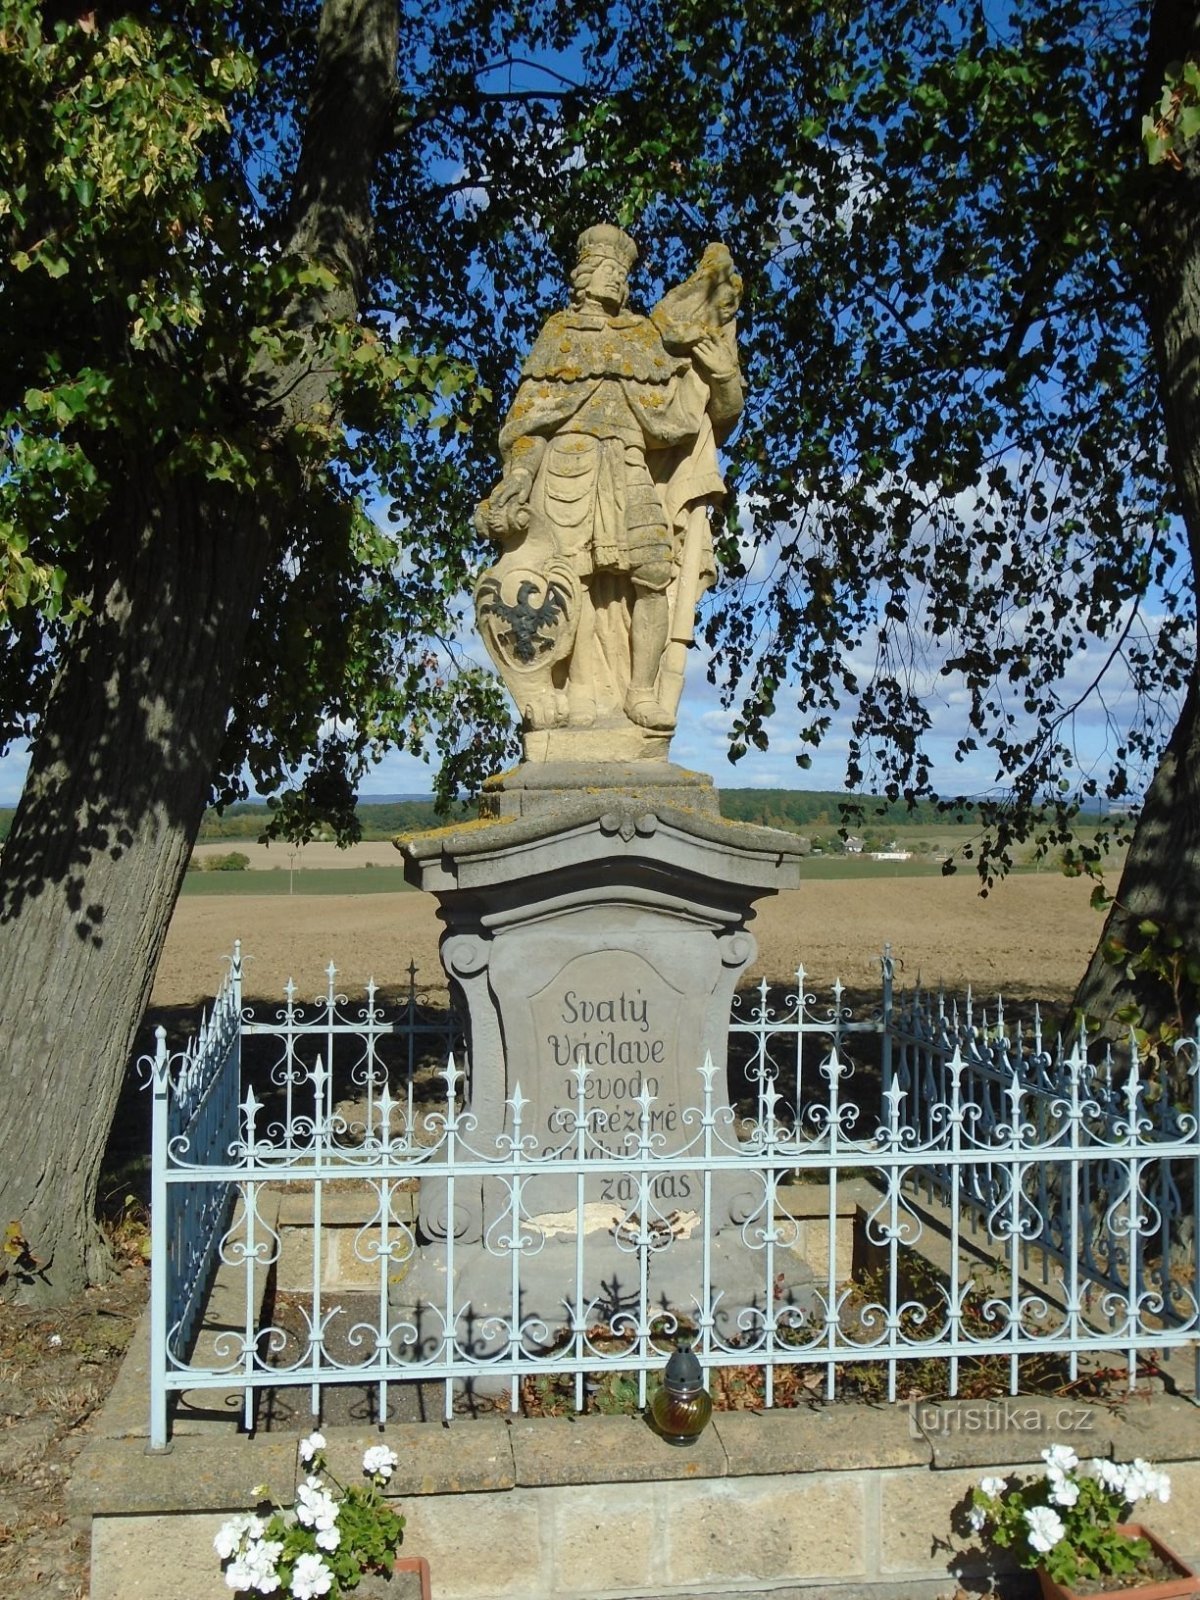 Standbeeld van St. Vaclav (Petrovice, 29.9.2018/XNUMX/XNUMX)